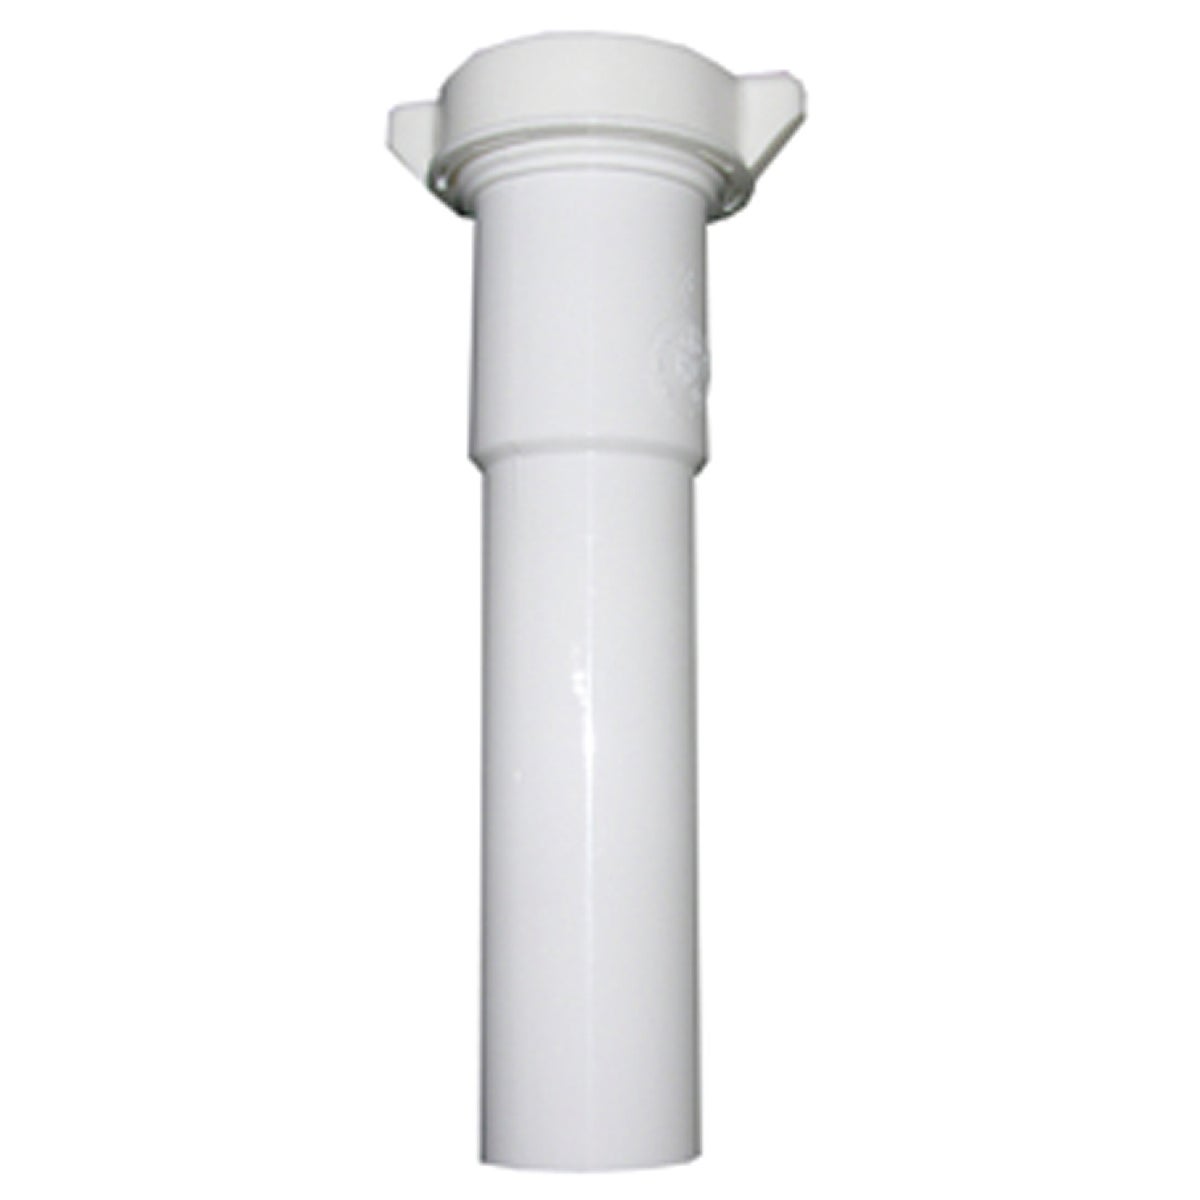 Lasco 1-1/2 In. OD x 8 In. White Plastic Extension Tube